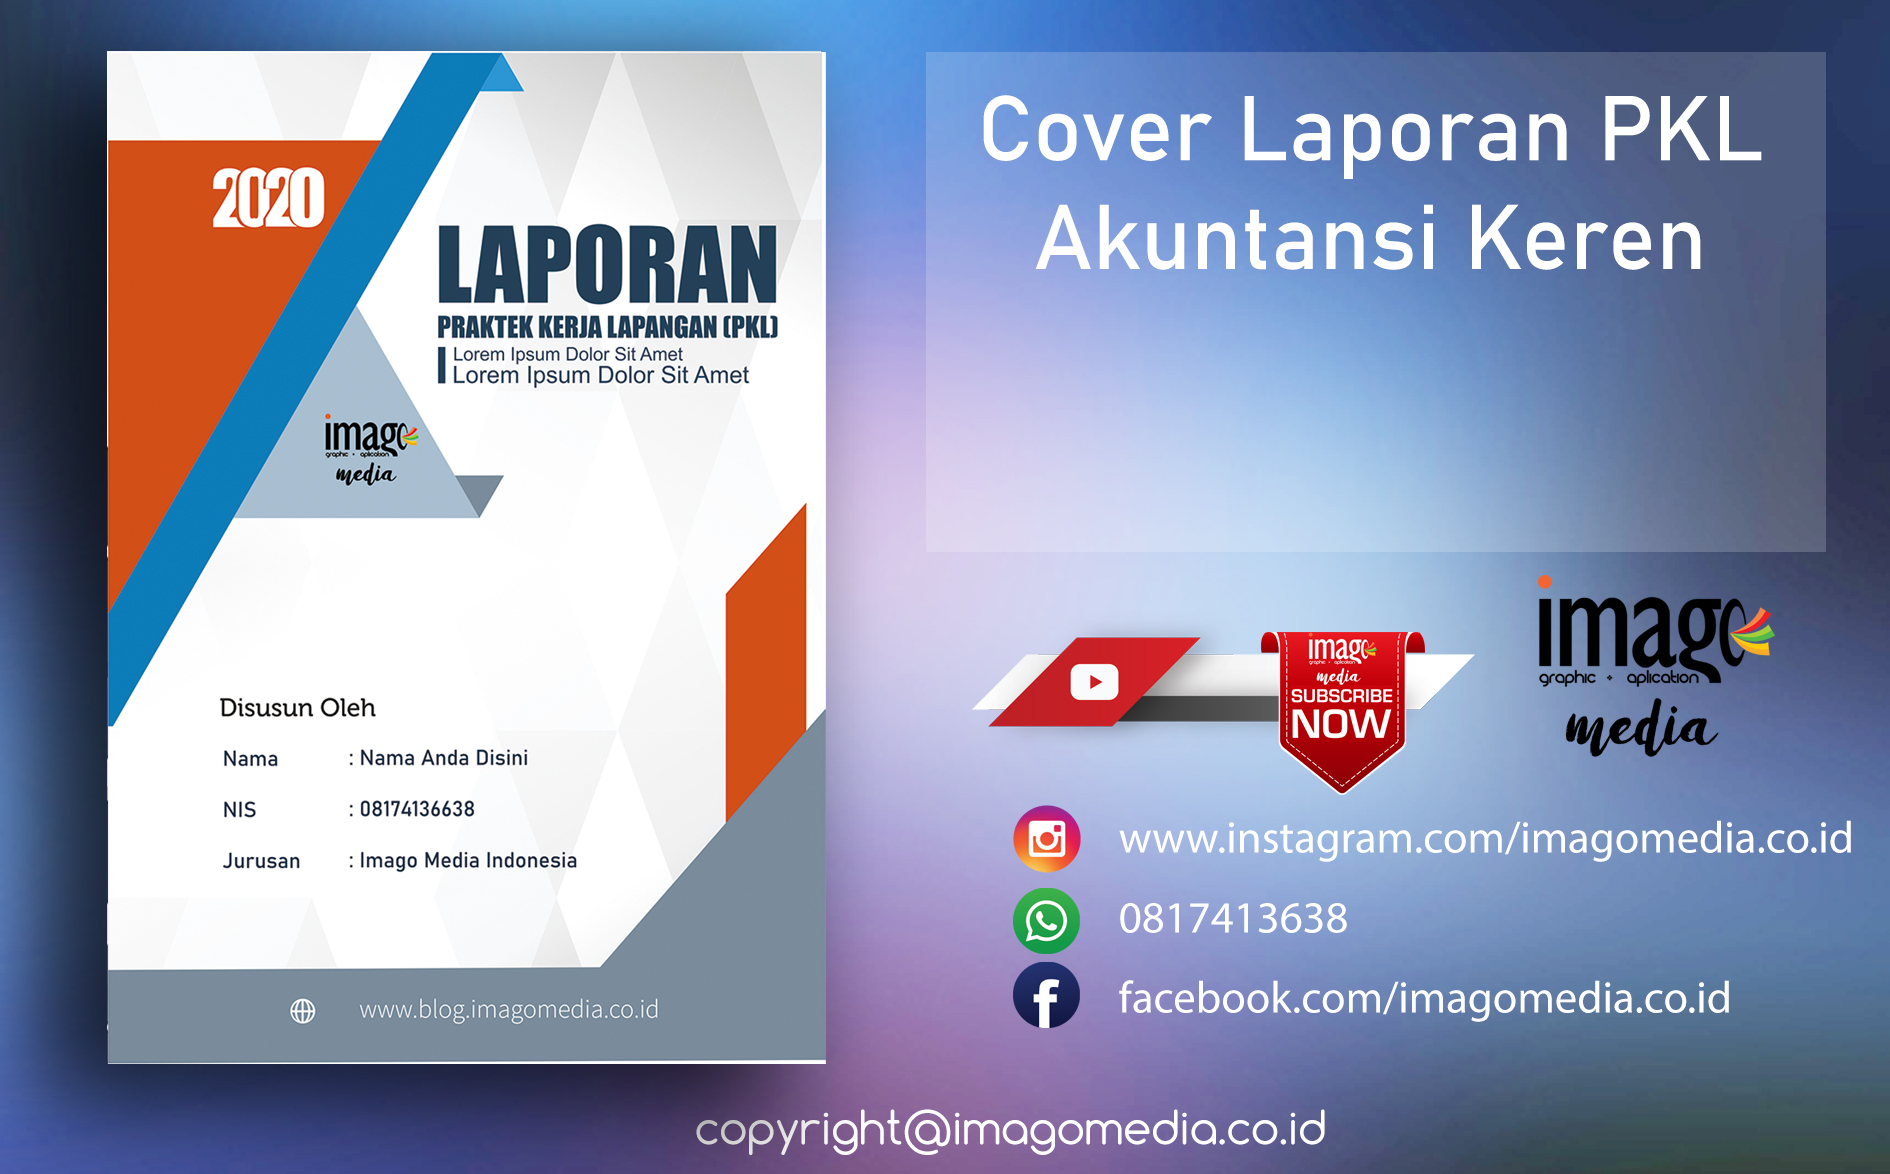  Desain Cover Laporan  PKL Akuntansi Keren Imago Media 